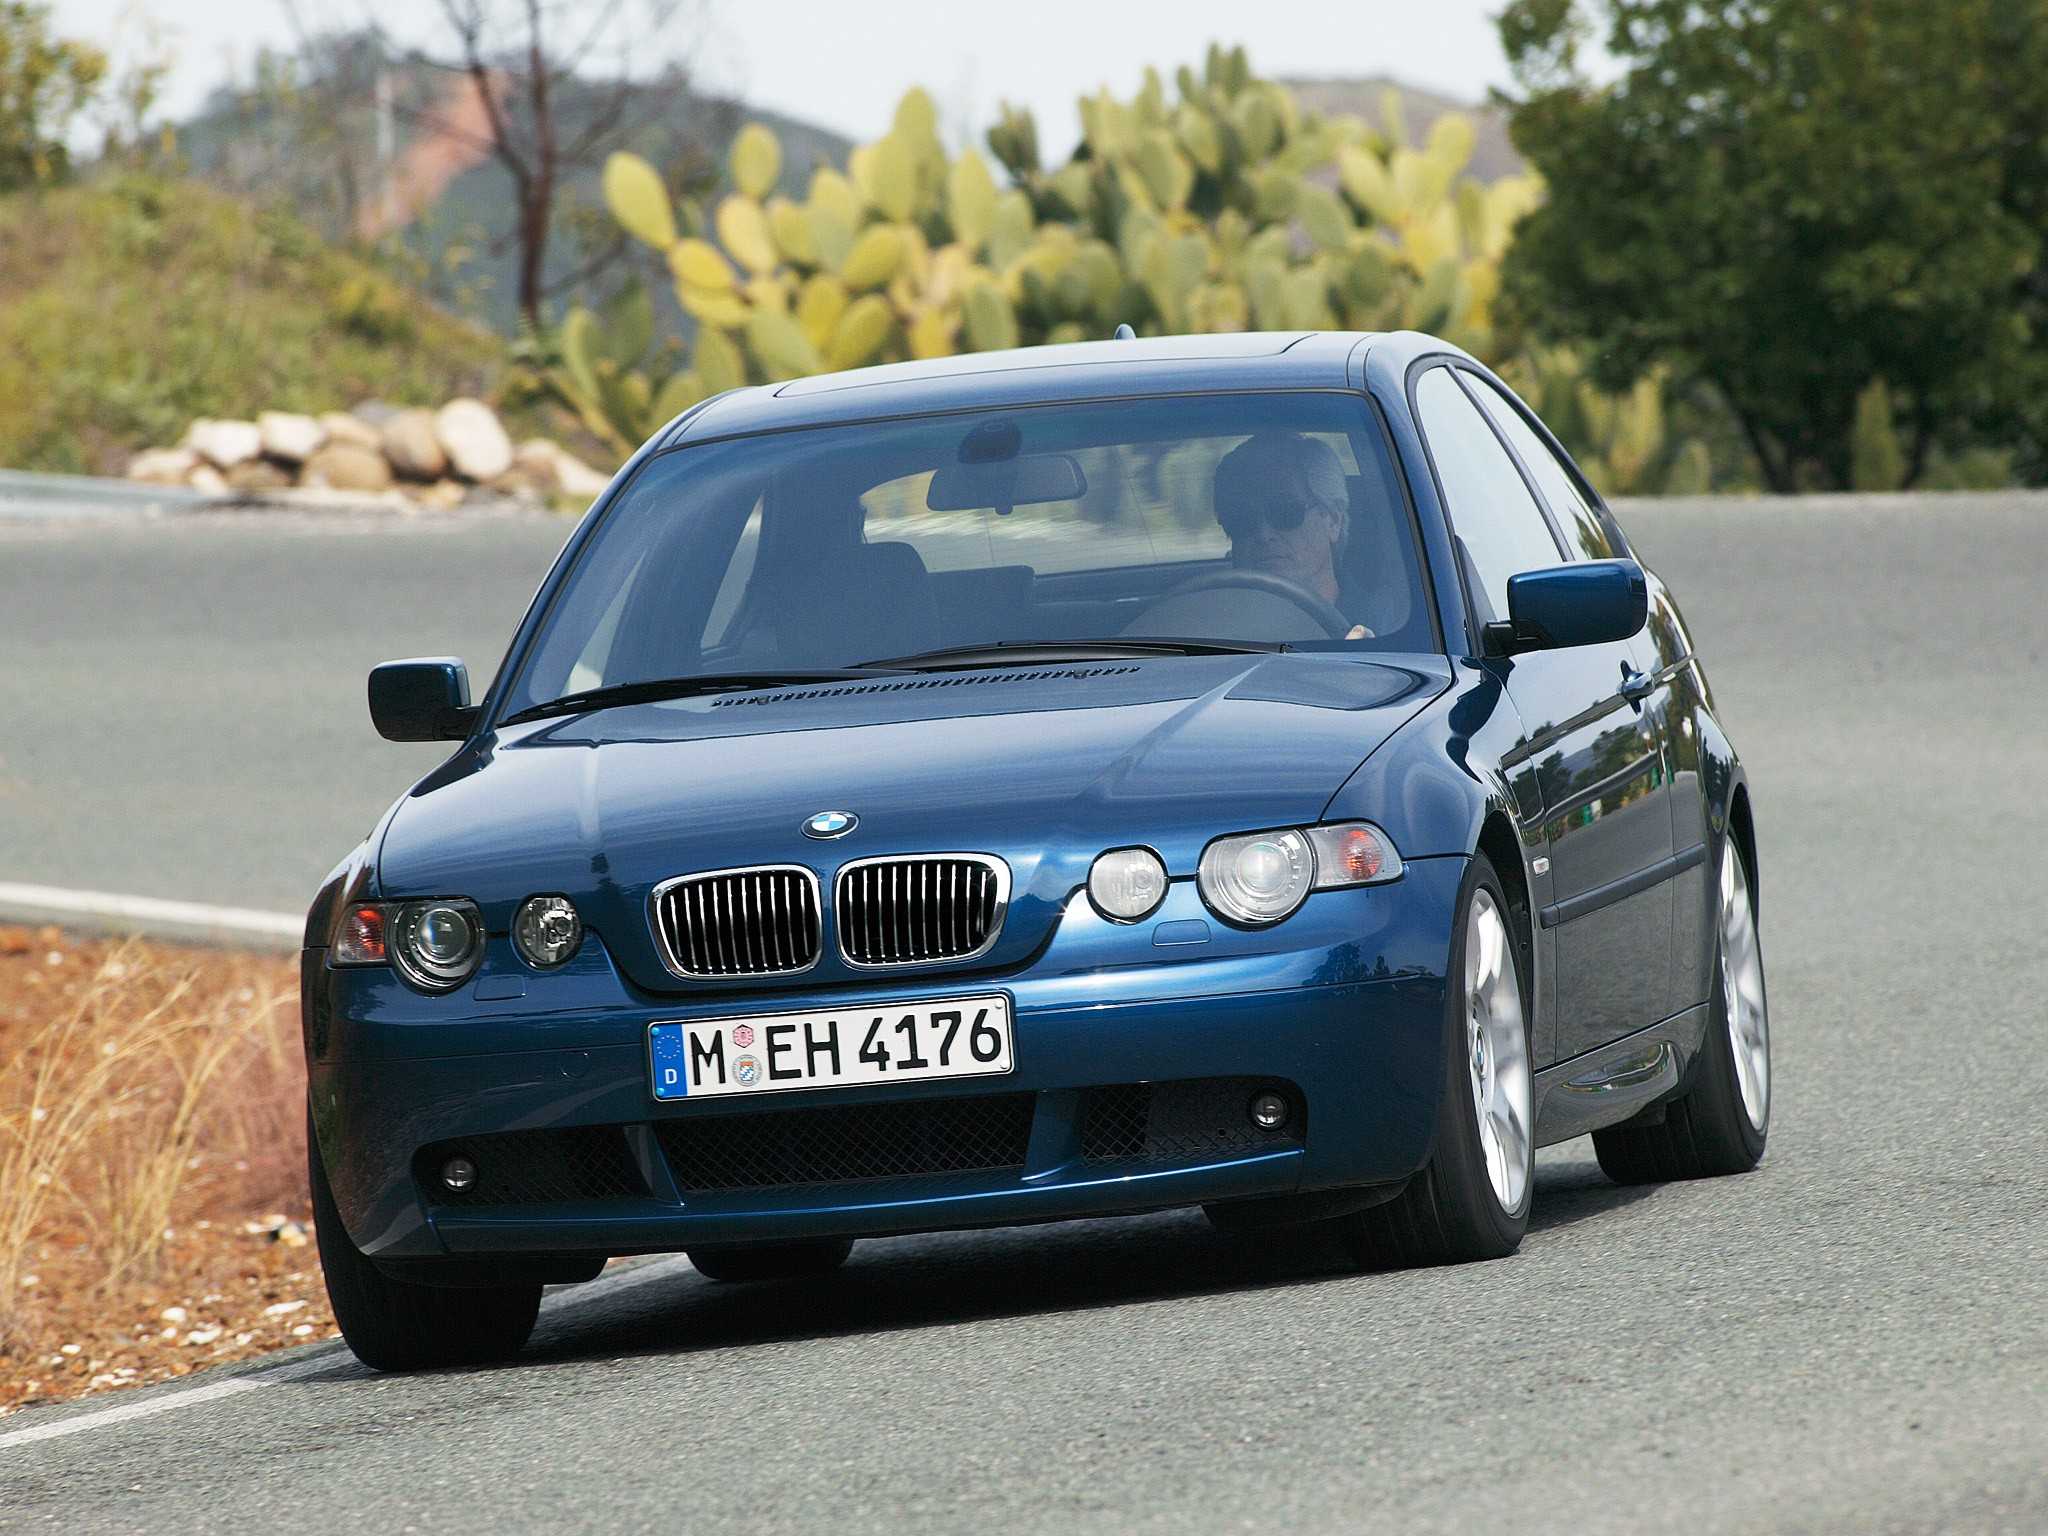 Технические характеристики BMW 318i 2002-2005 в автокаталоге CarExpertru Размеры и масса BMW 318i 2002-2005 Клиренс BMW 3-series Мощность двигателя BMW 318i 2002-2005 Расход топлива BMW 318i 2002-2005 Максимальная скорость BMW 318i 2002-2005 Подвеска BMW